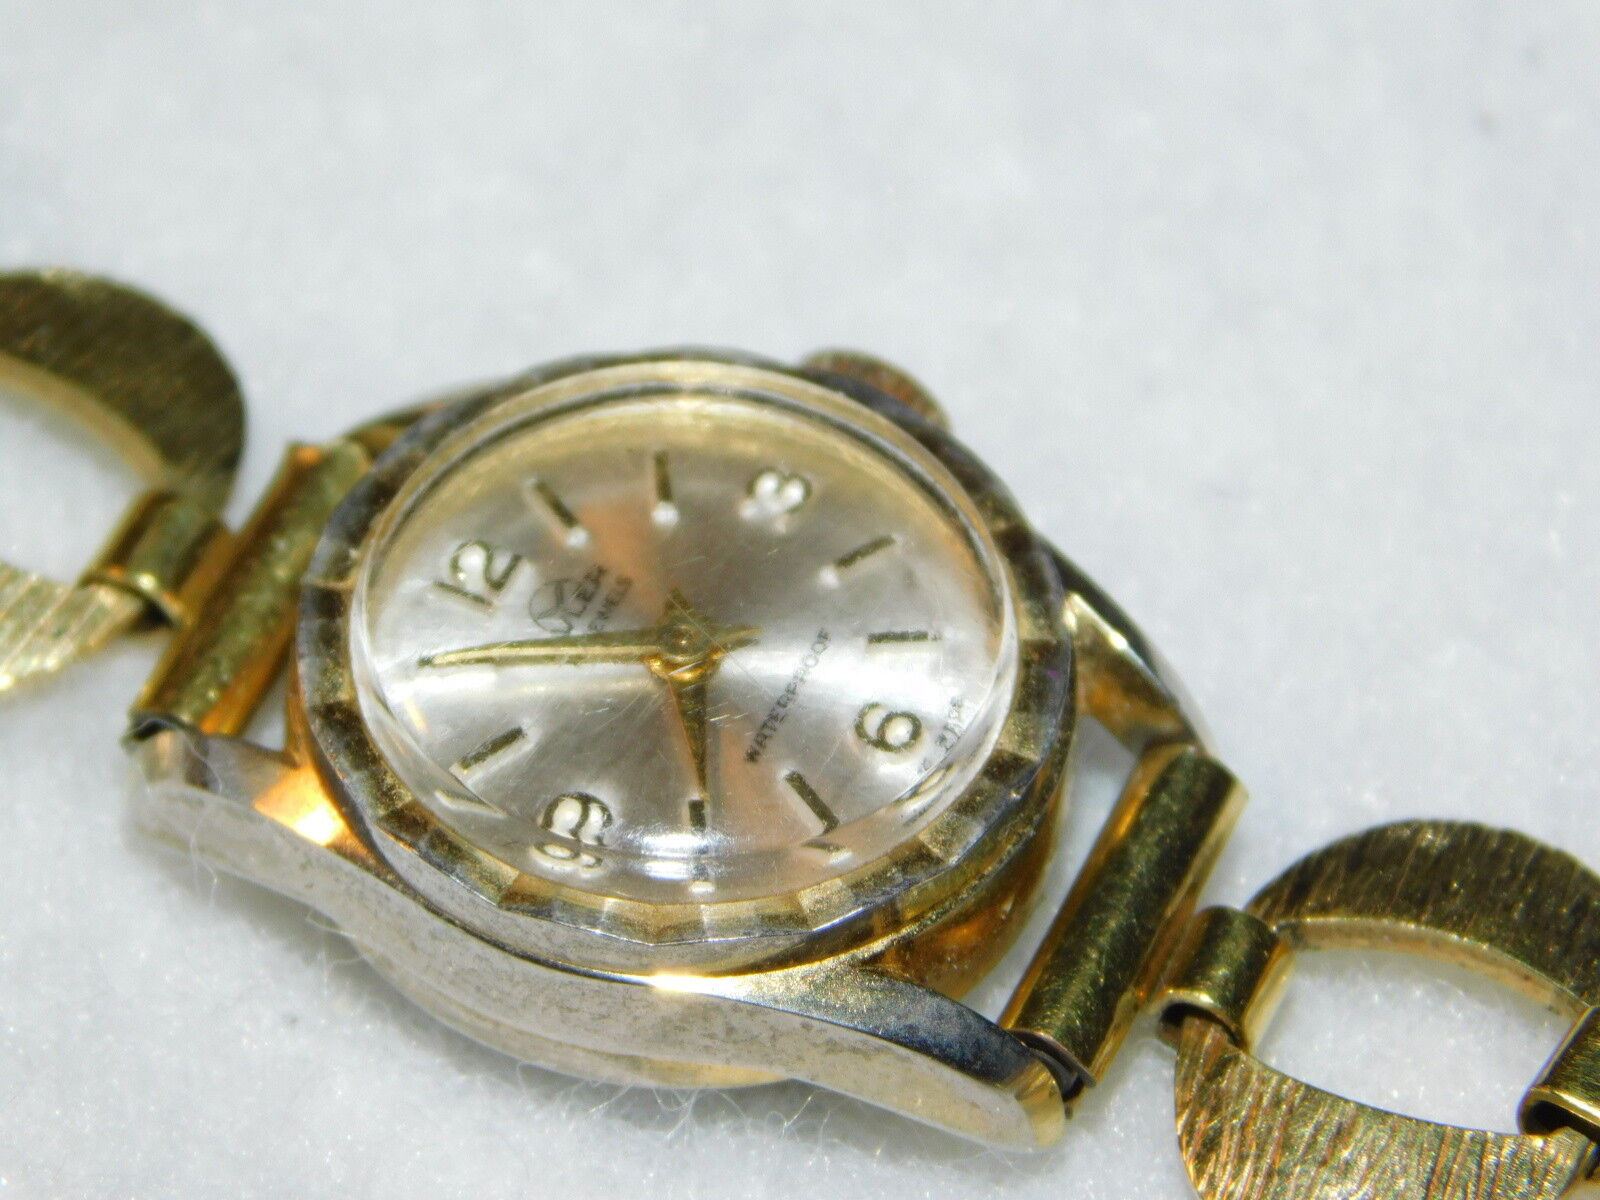 VINTAGE montre SUISSE BULER 17 jewels mecanique MECHANICAL uhr SWISS lady watch